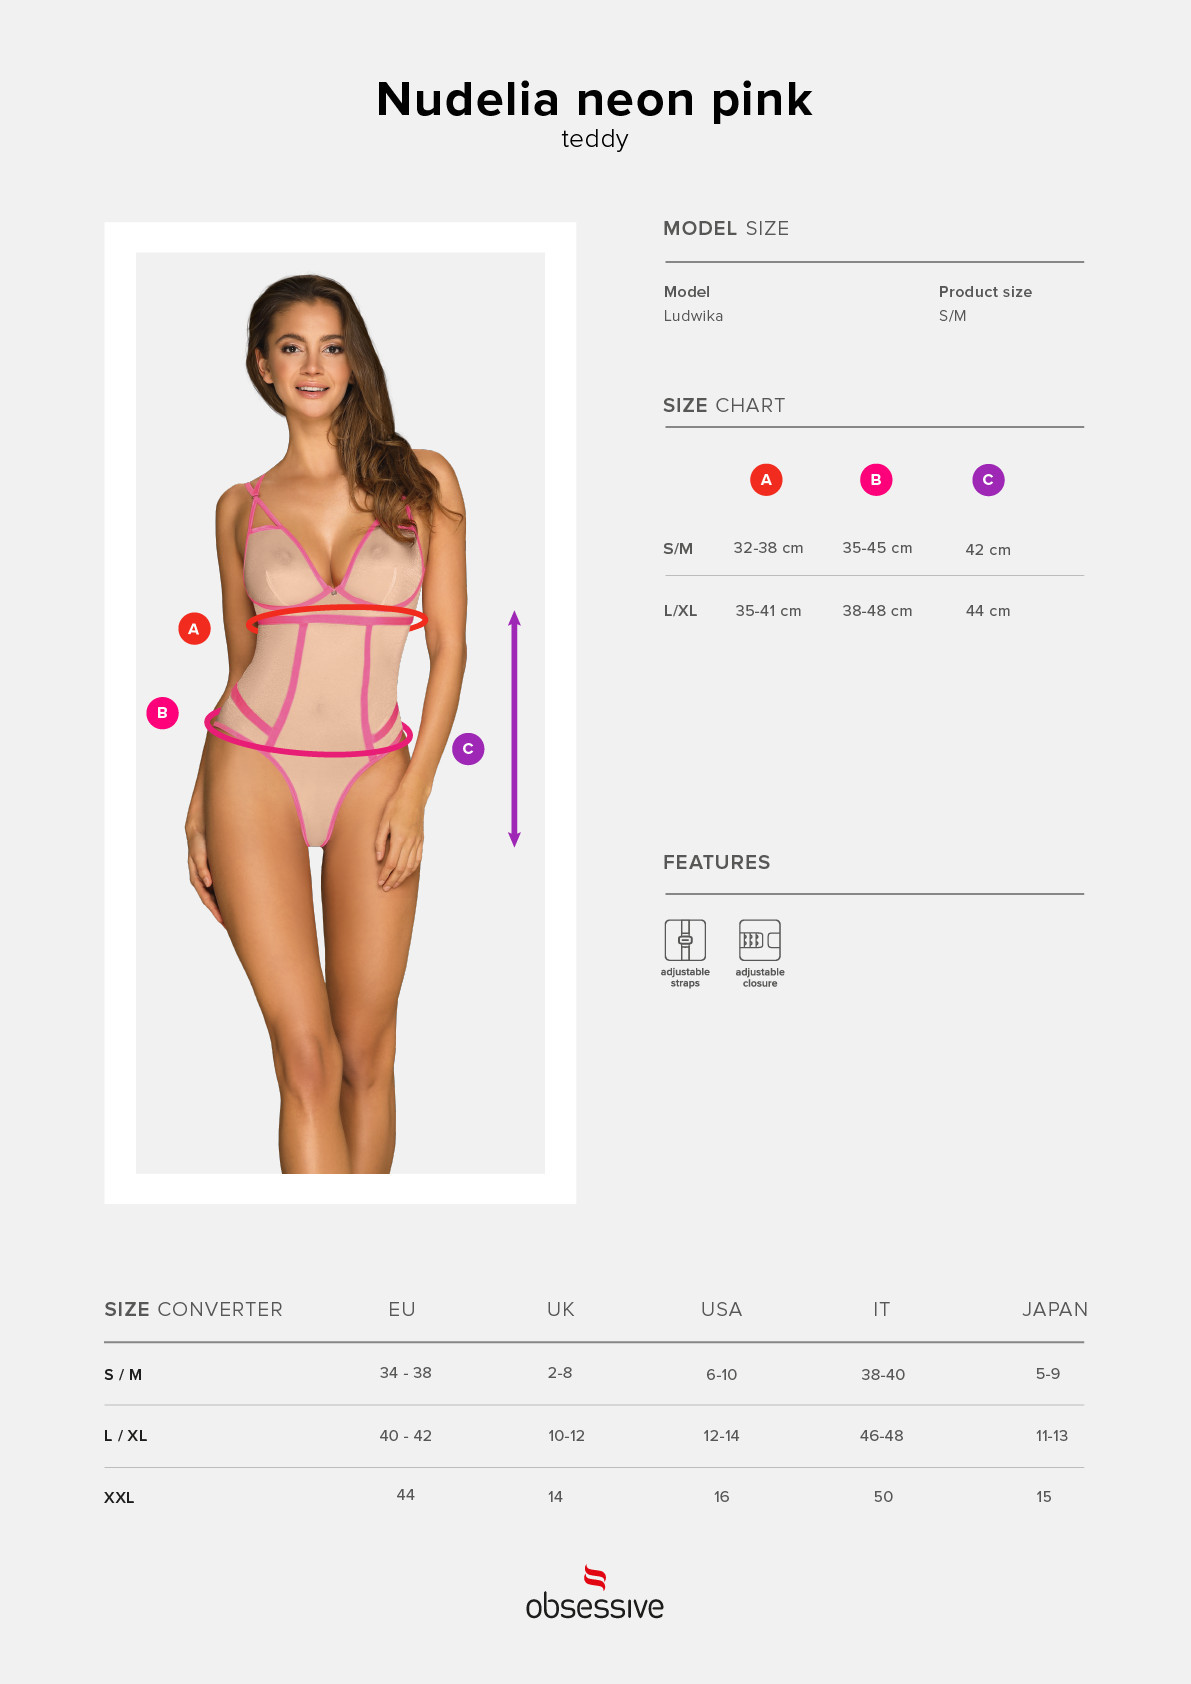 Elegantní body model 15537101 teddy neon pink - Obsessive Velikost: L/XL, Barvy: růžova